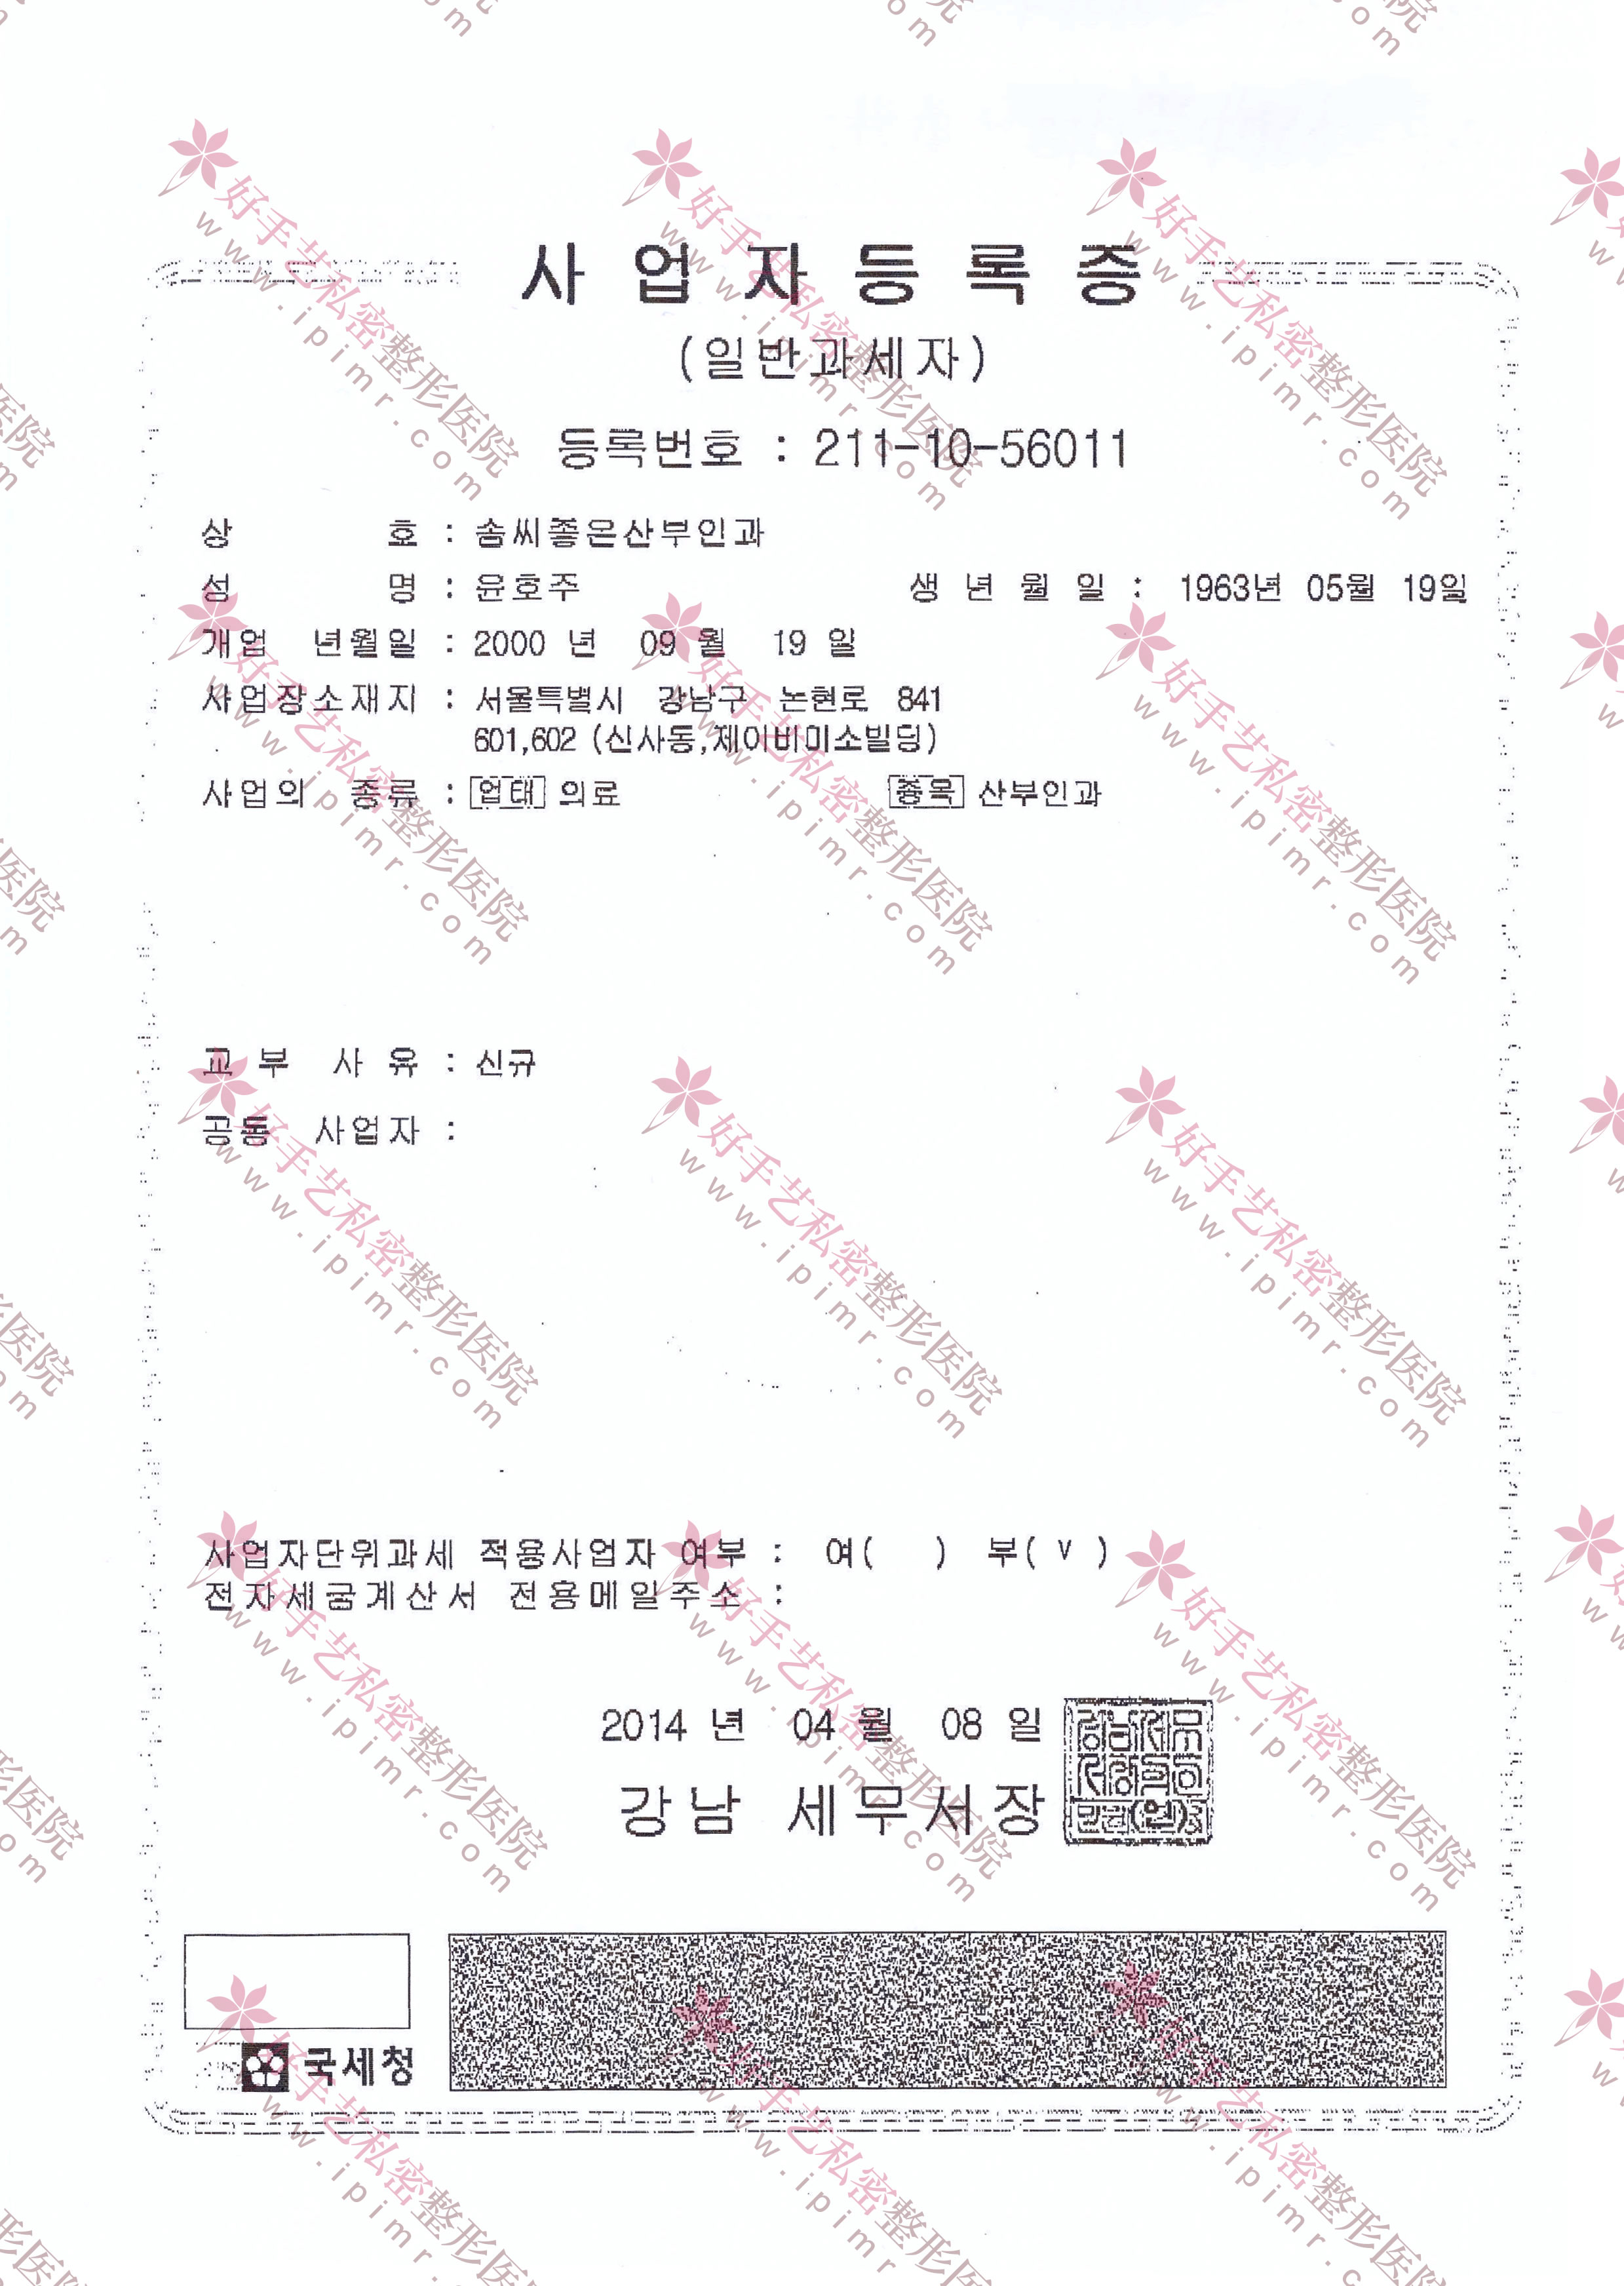 韩国事业者登陆证